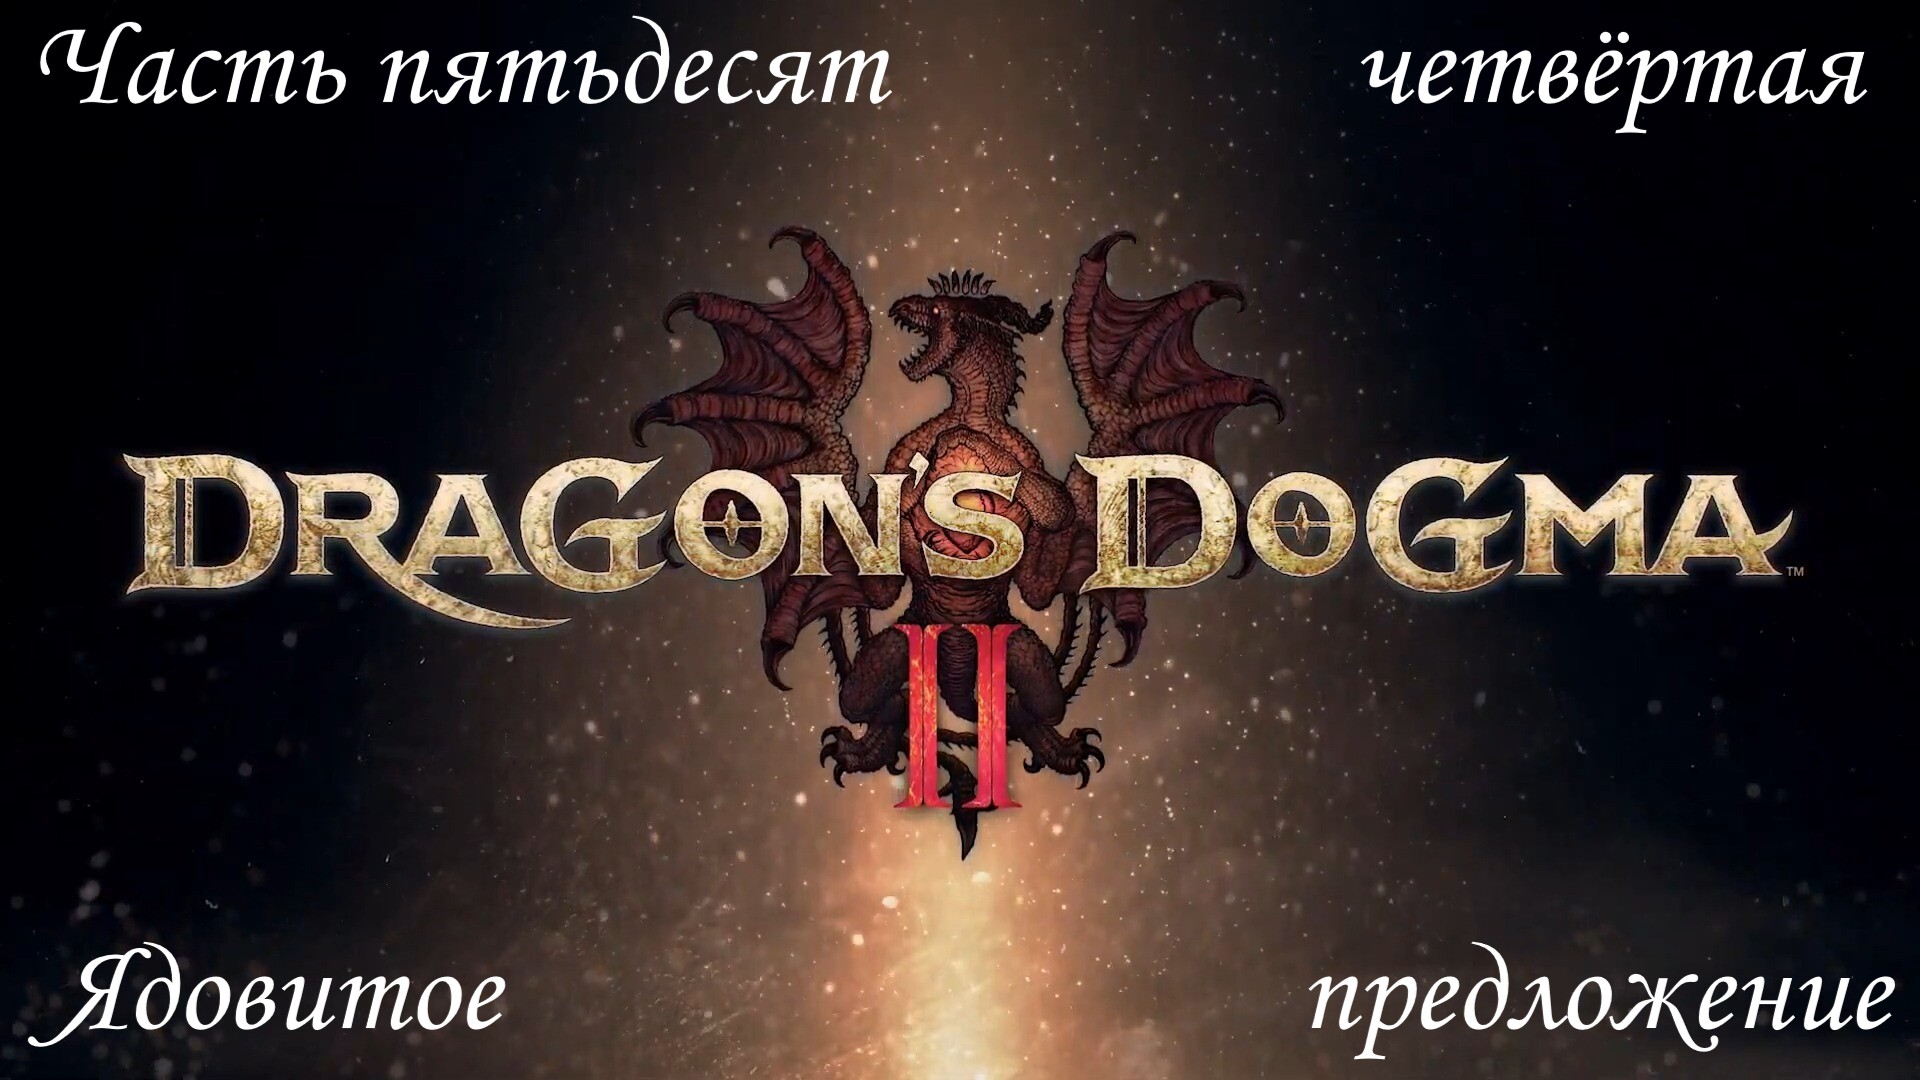 Прохождение Dragon's Dogma 2 на русском - Часть пятьдесят четвёртая. Ядовитое предложение